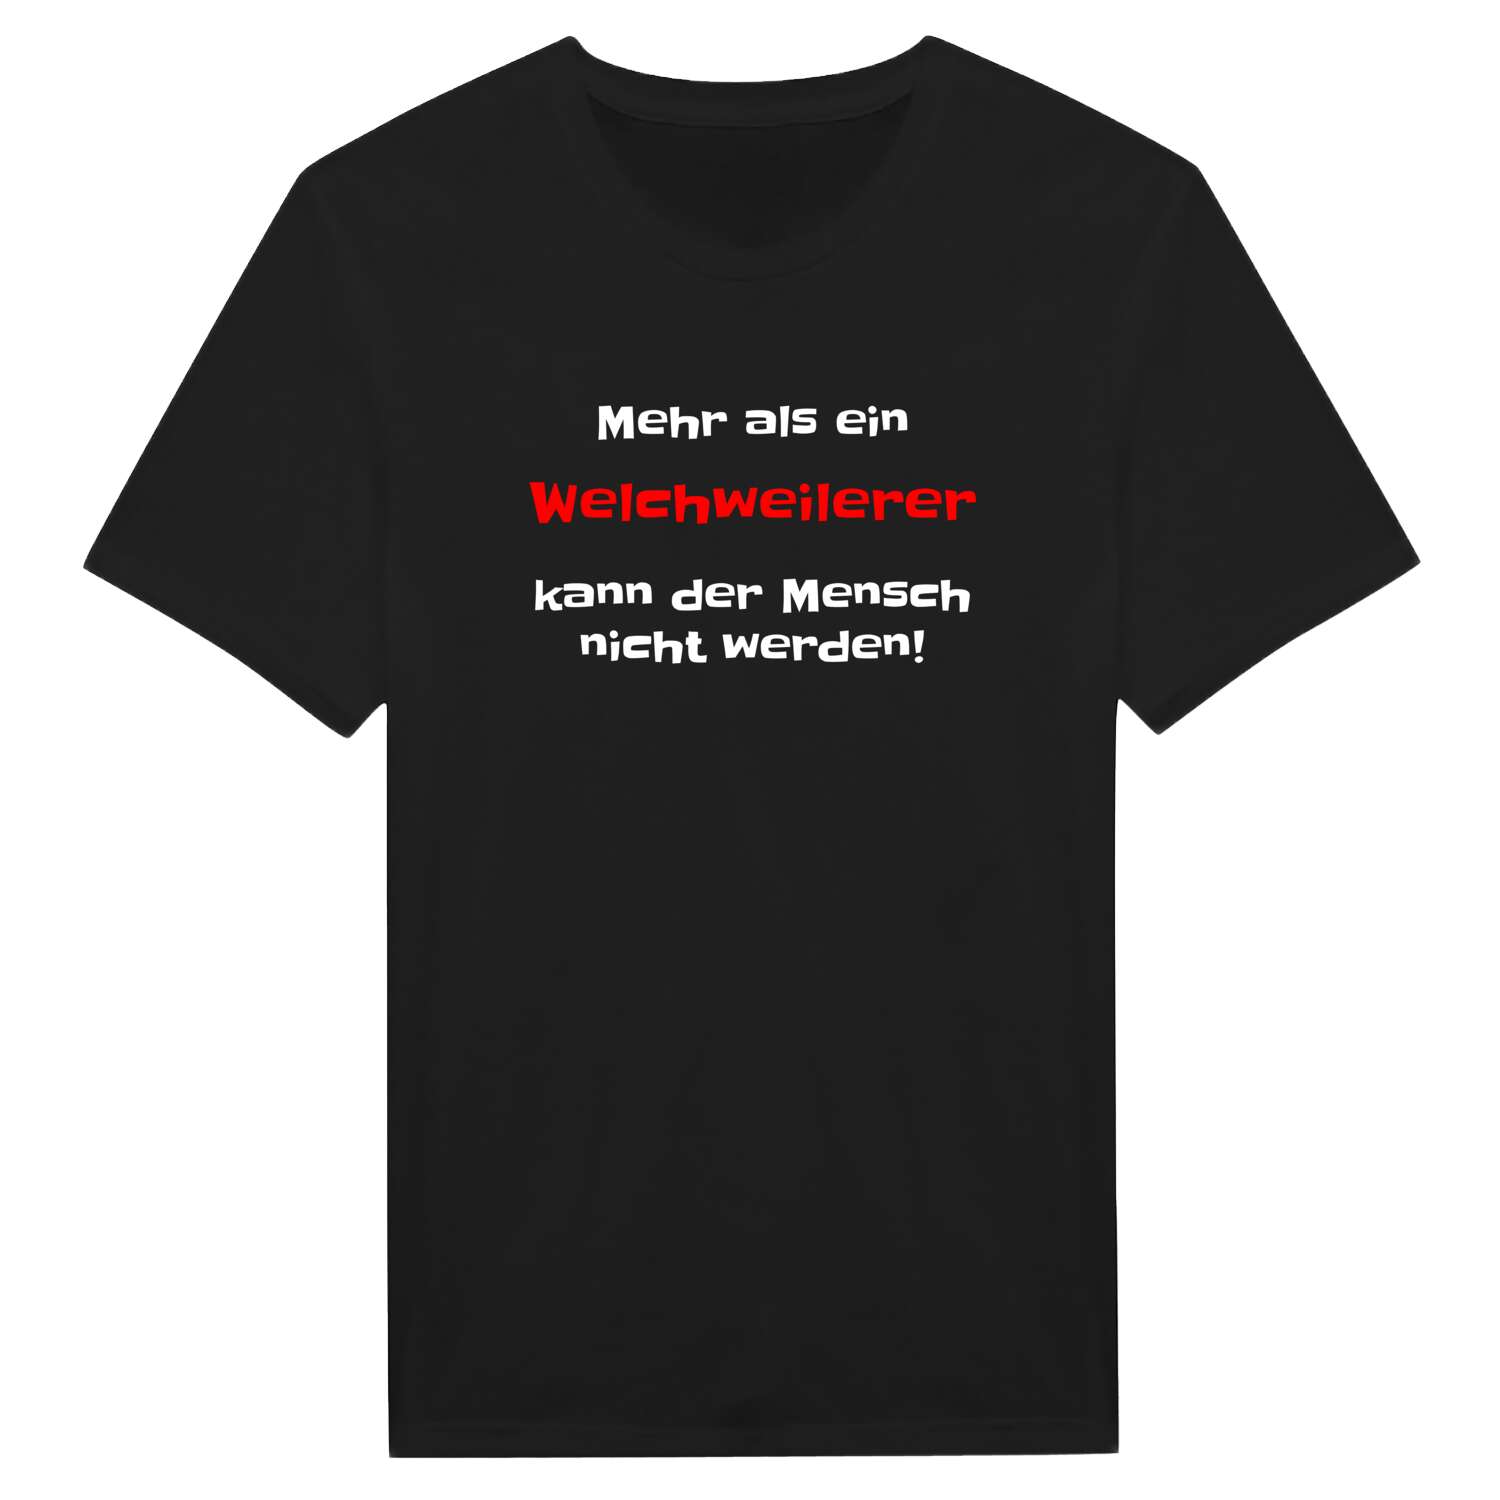 Welchweiler T-Shirt »Mehr als ein«